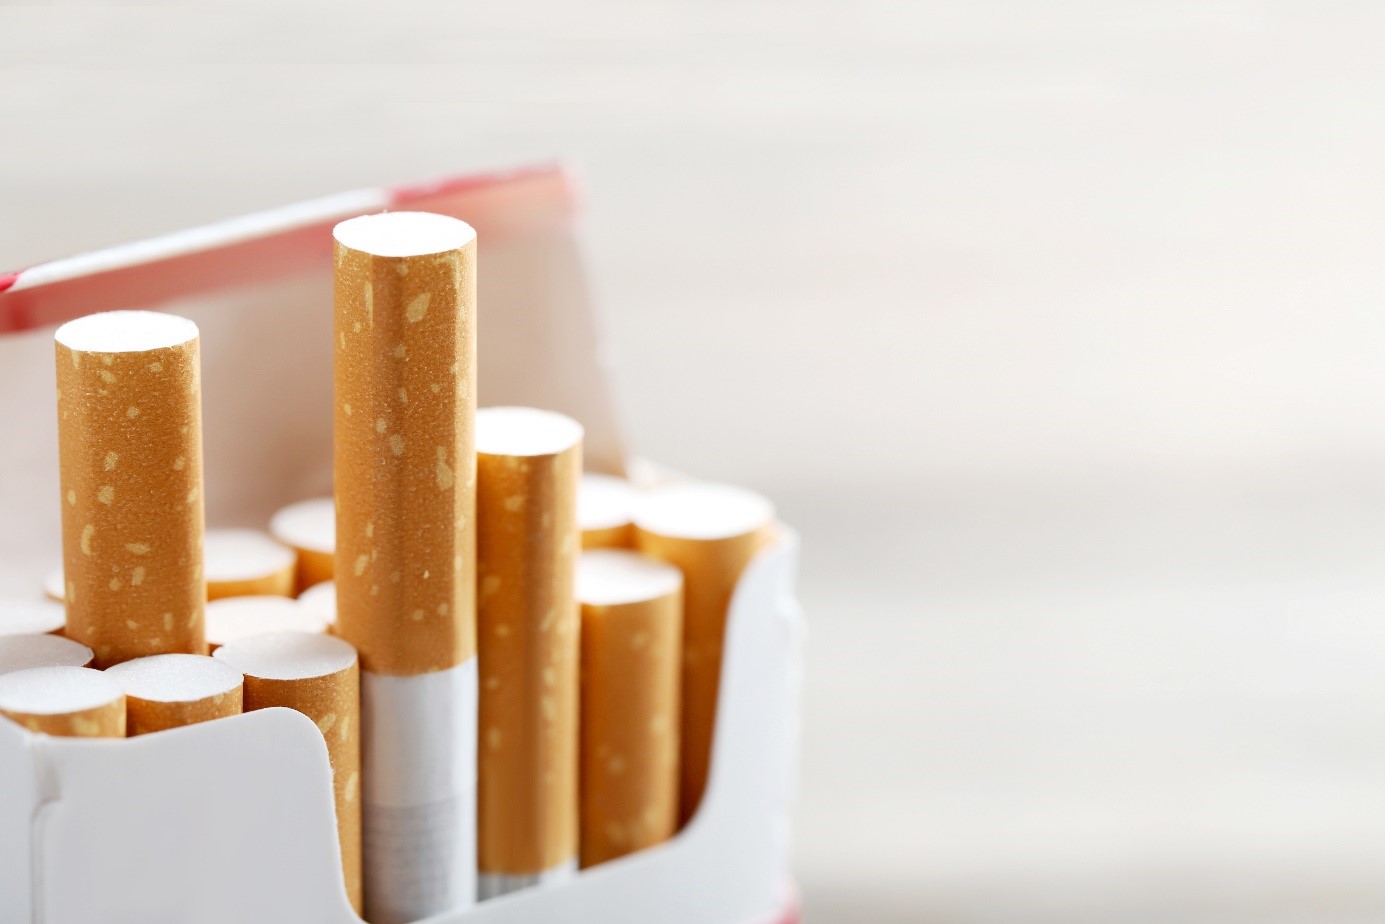 Giftig, nutzlos und aus Plastik: Gehören Zigarettenfilter verboten?